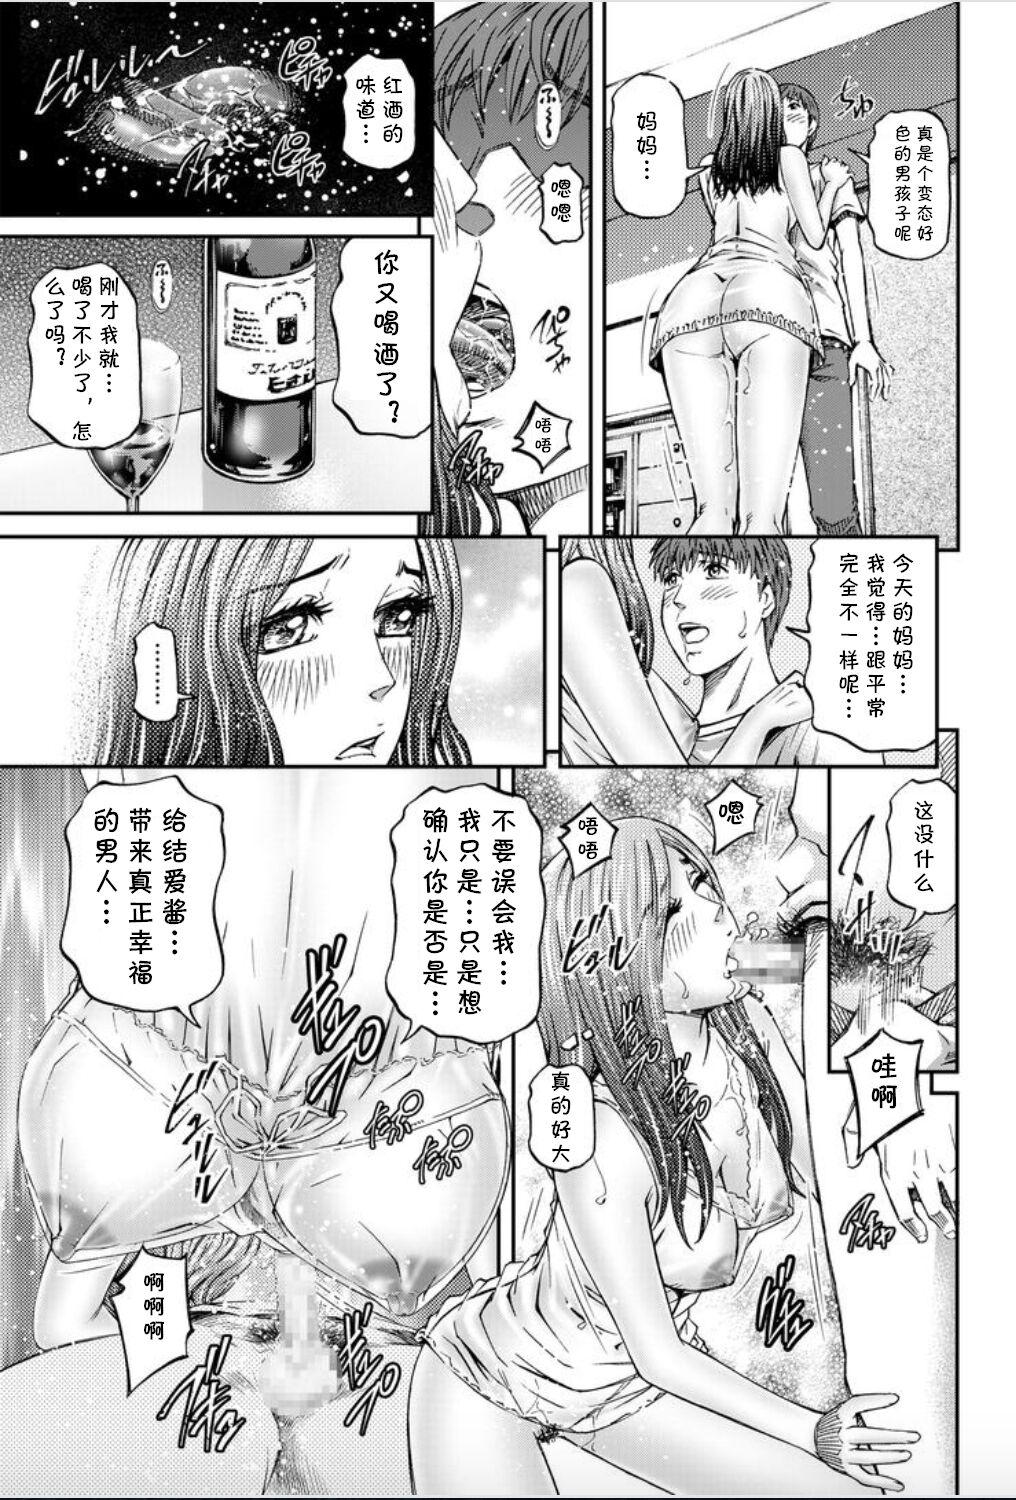 Mms Onna-tachi ga Iku Toki... Ero Drama Vol. 8 Datte, Kanojo no Haha ga... Hot Girl Porn - Page 9